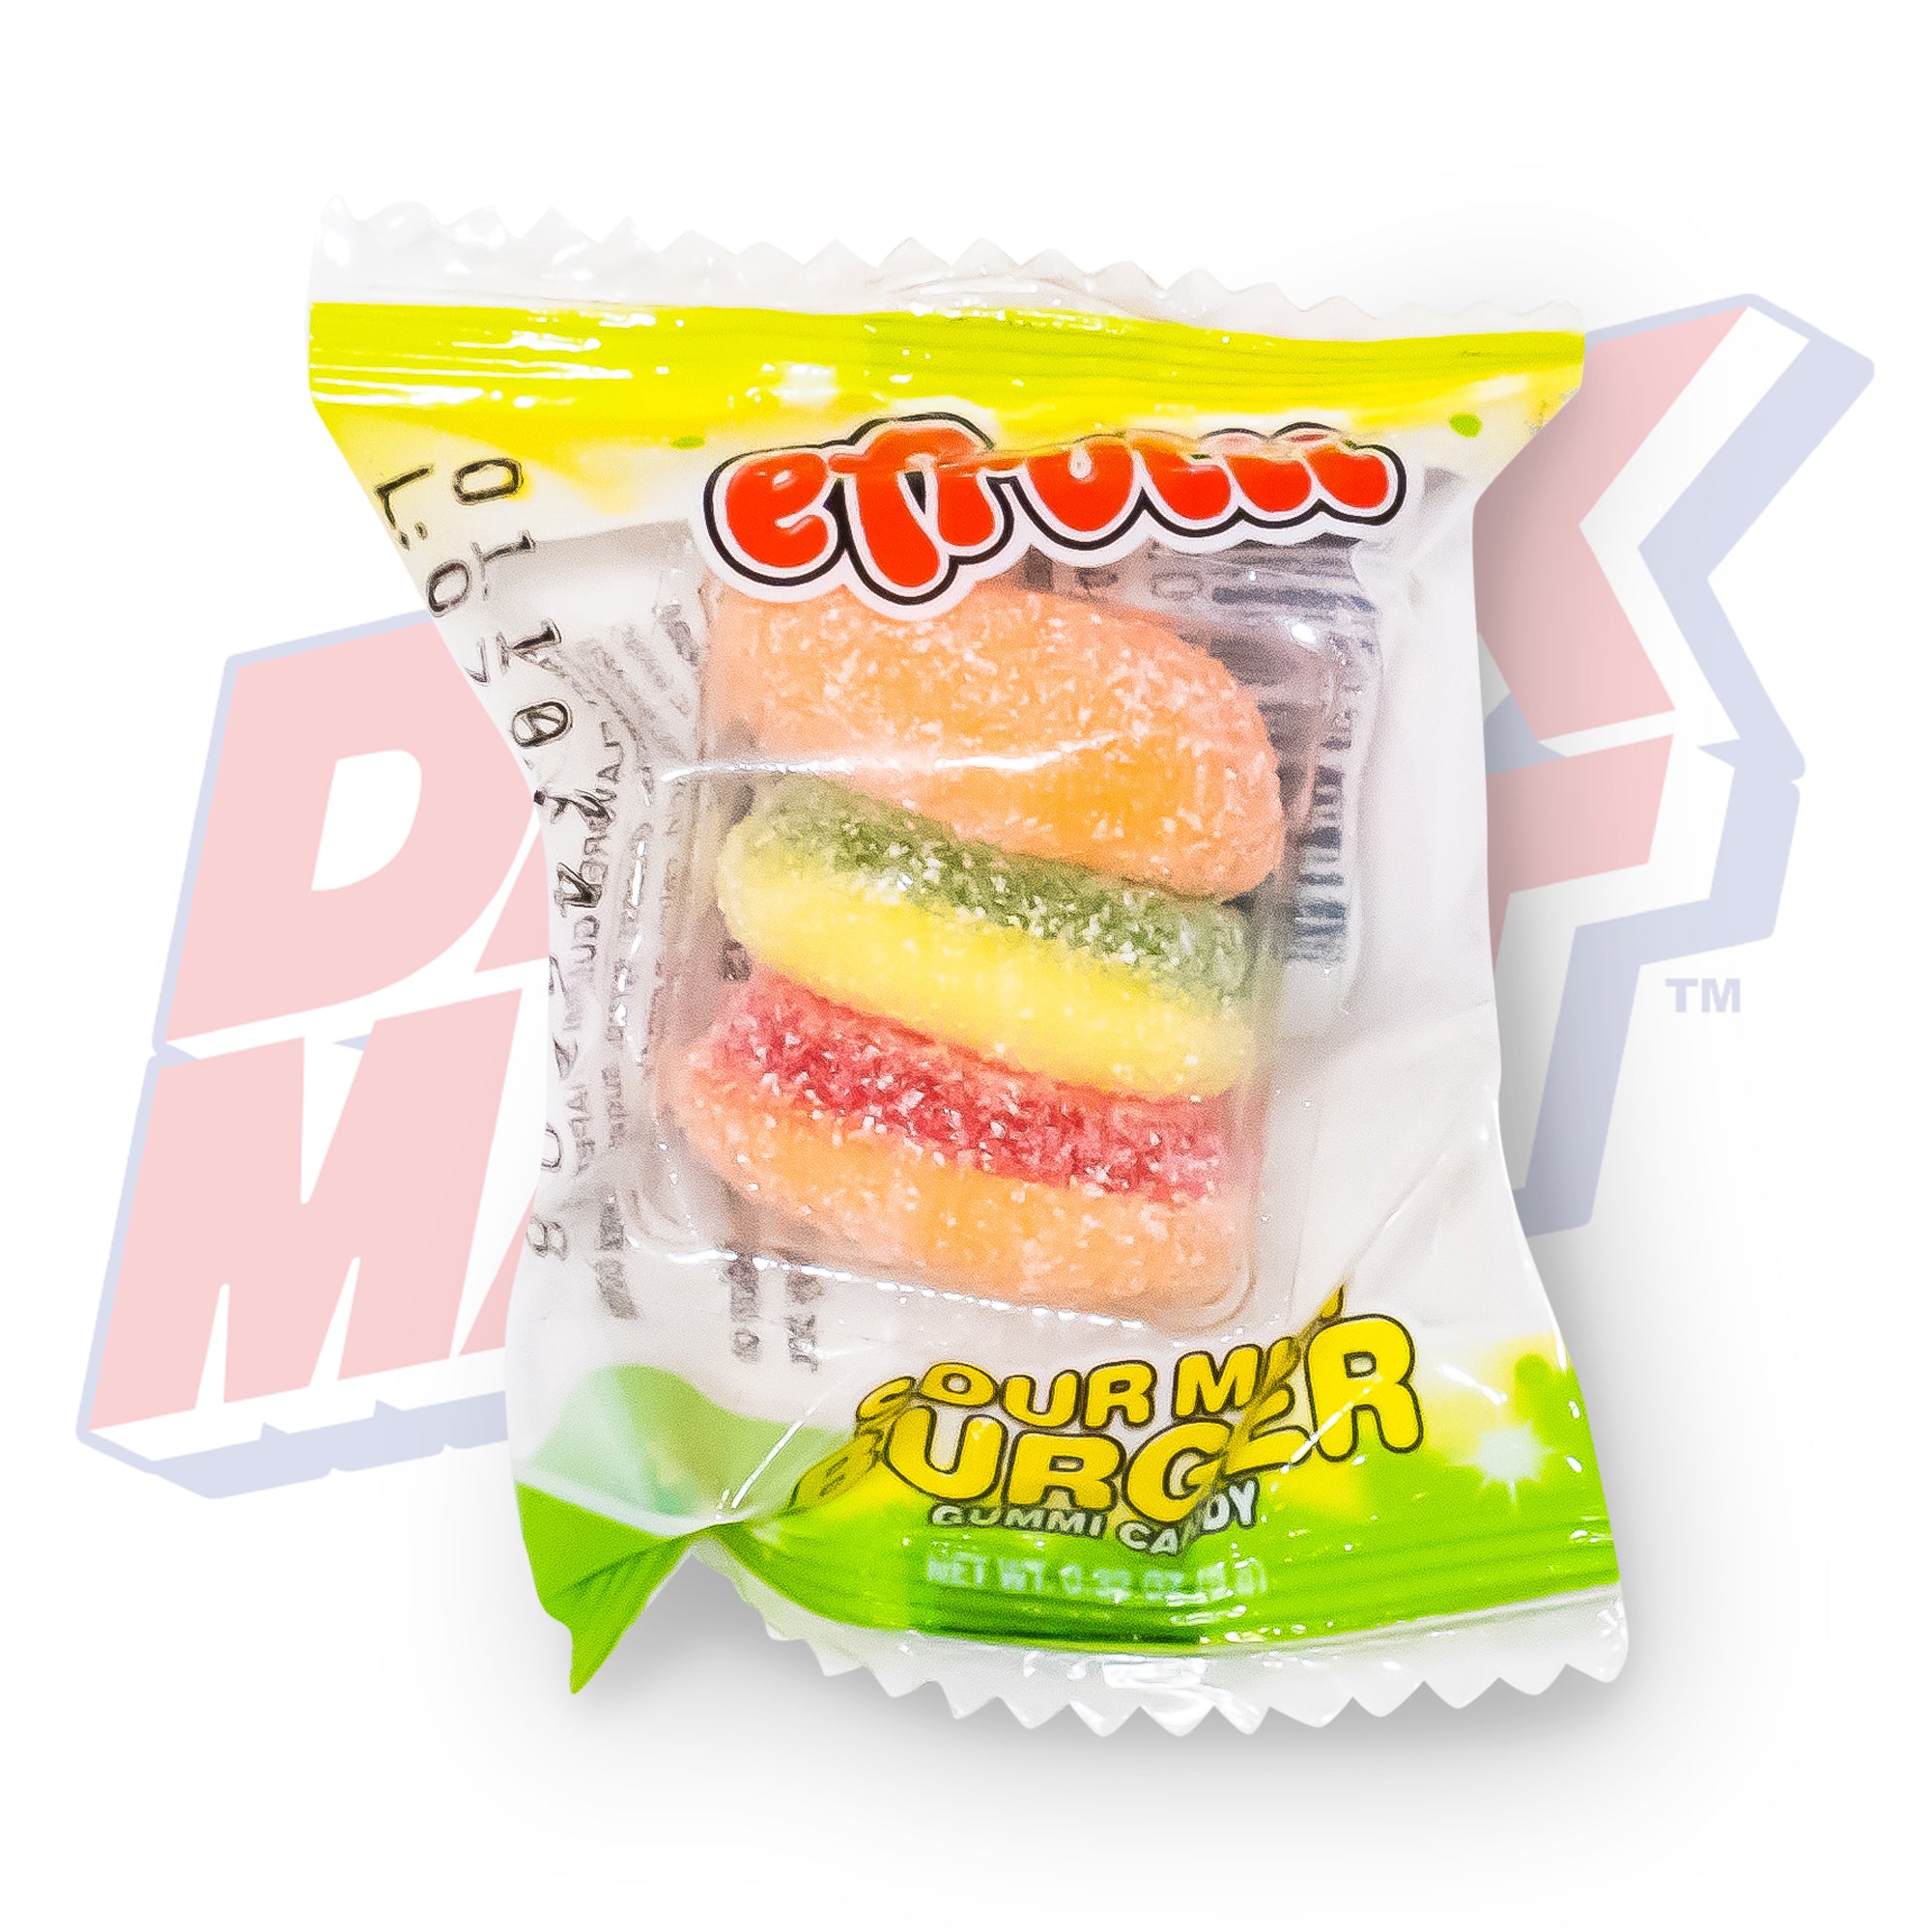 Efrutti Sour Mini Burger - 9g